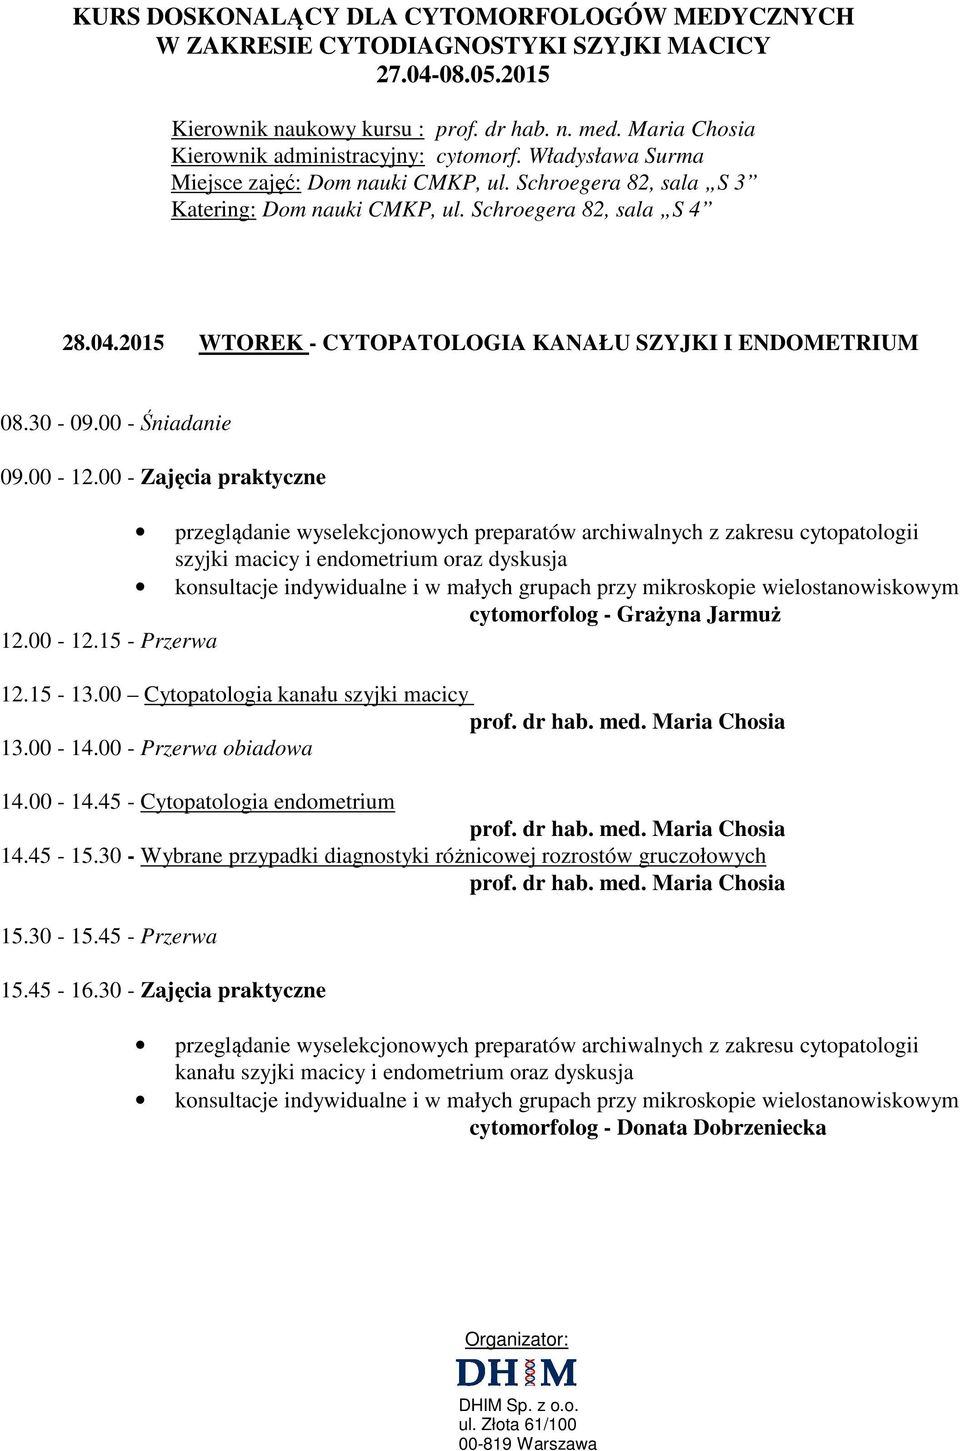 Jarmuż 12.00-12.15 - Przerwa 12.15-13.00 Cytopatologia kanału szyjki macicy 13.00-14.00 - Przerwa obiadowa 14.00-14.45 - Cytopatologia endometrium 14.